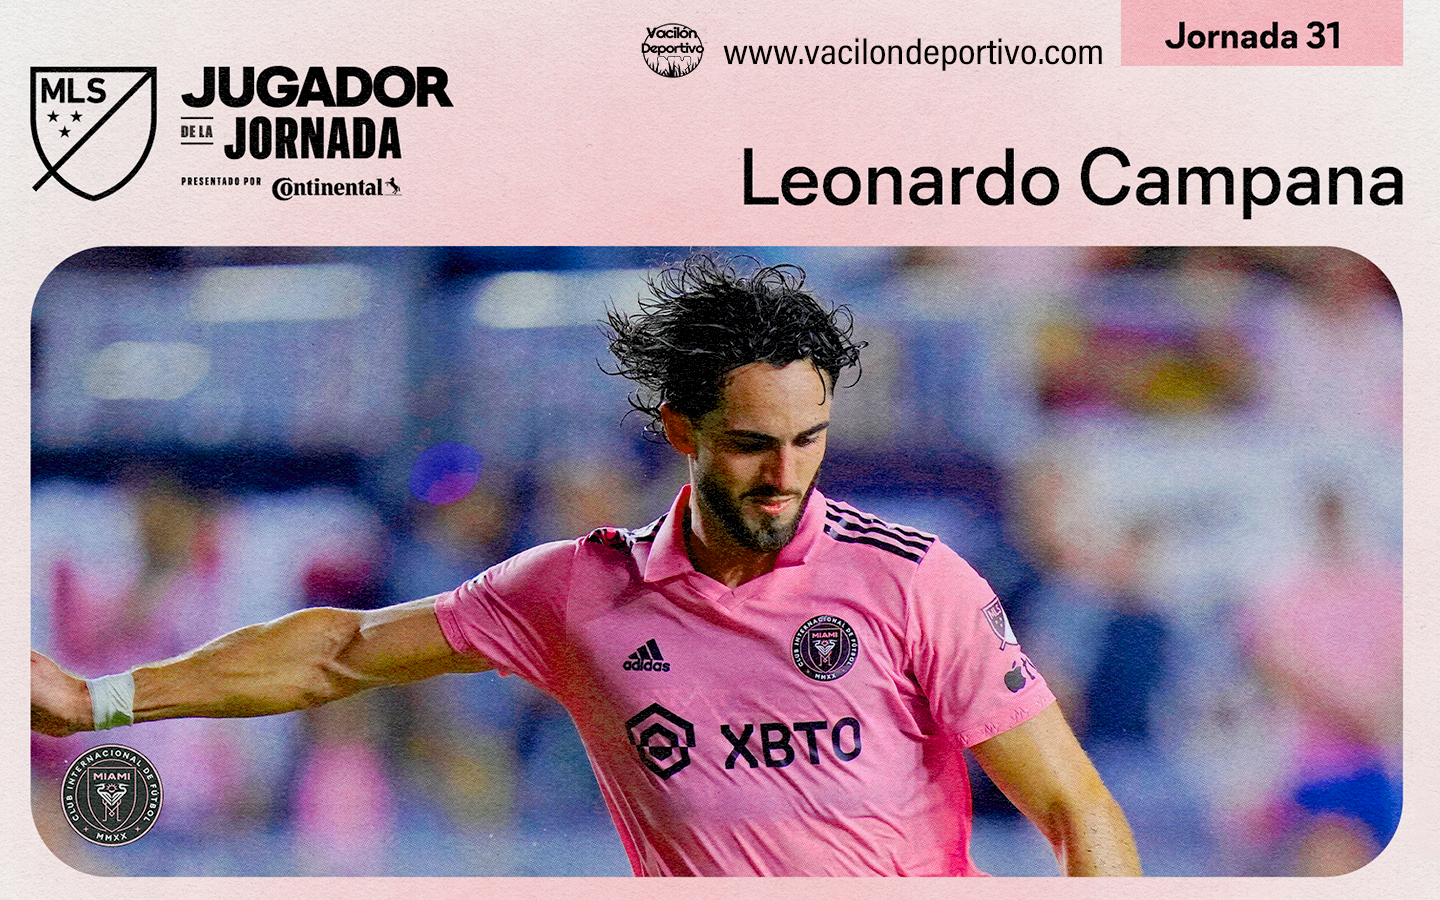 Leonardo Campana, delantero de Inter Miami CF, es nombrado Jugador de la Jornada 31 de MLS